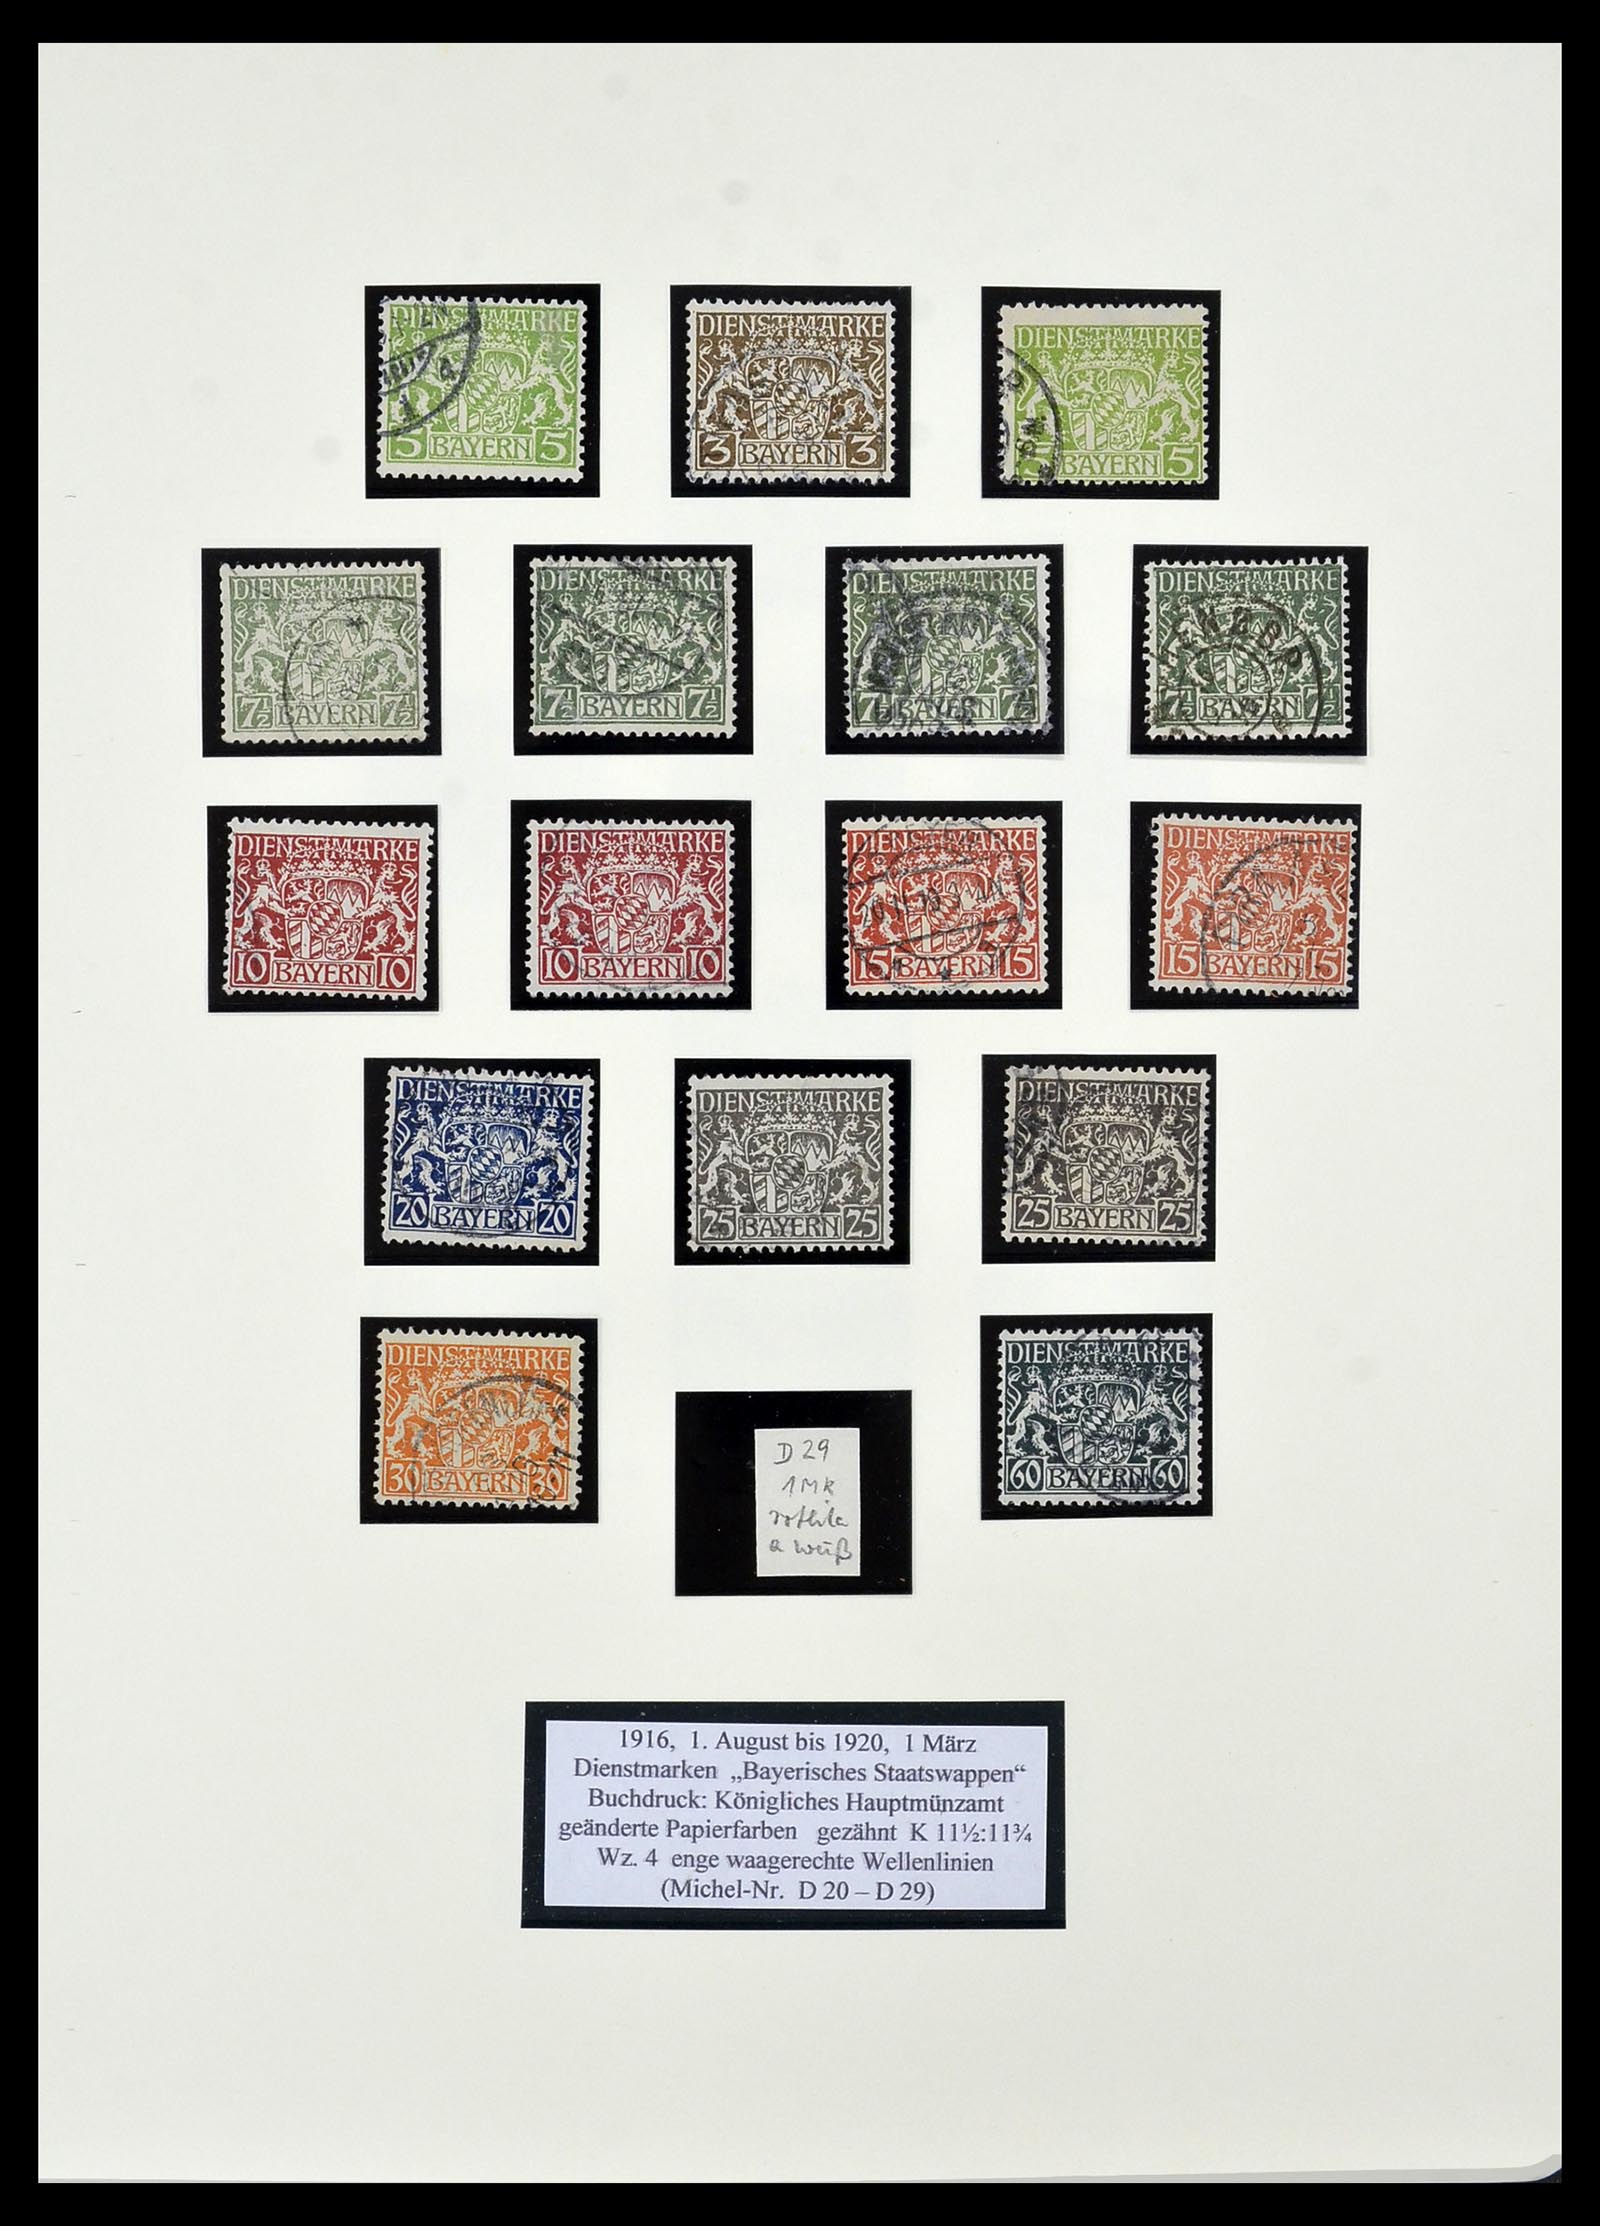 34159 038 - Postzegelverzameling 34159 Oud Duitse Staten 1860-1920.